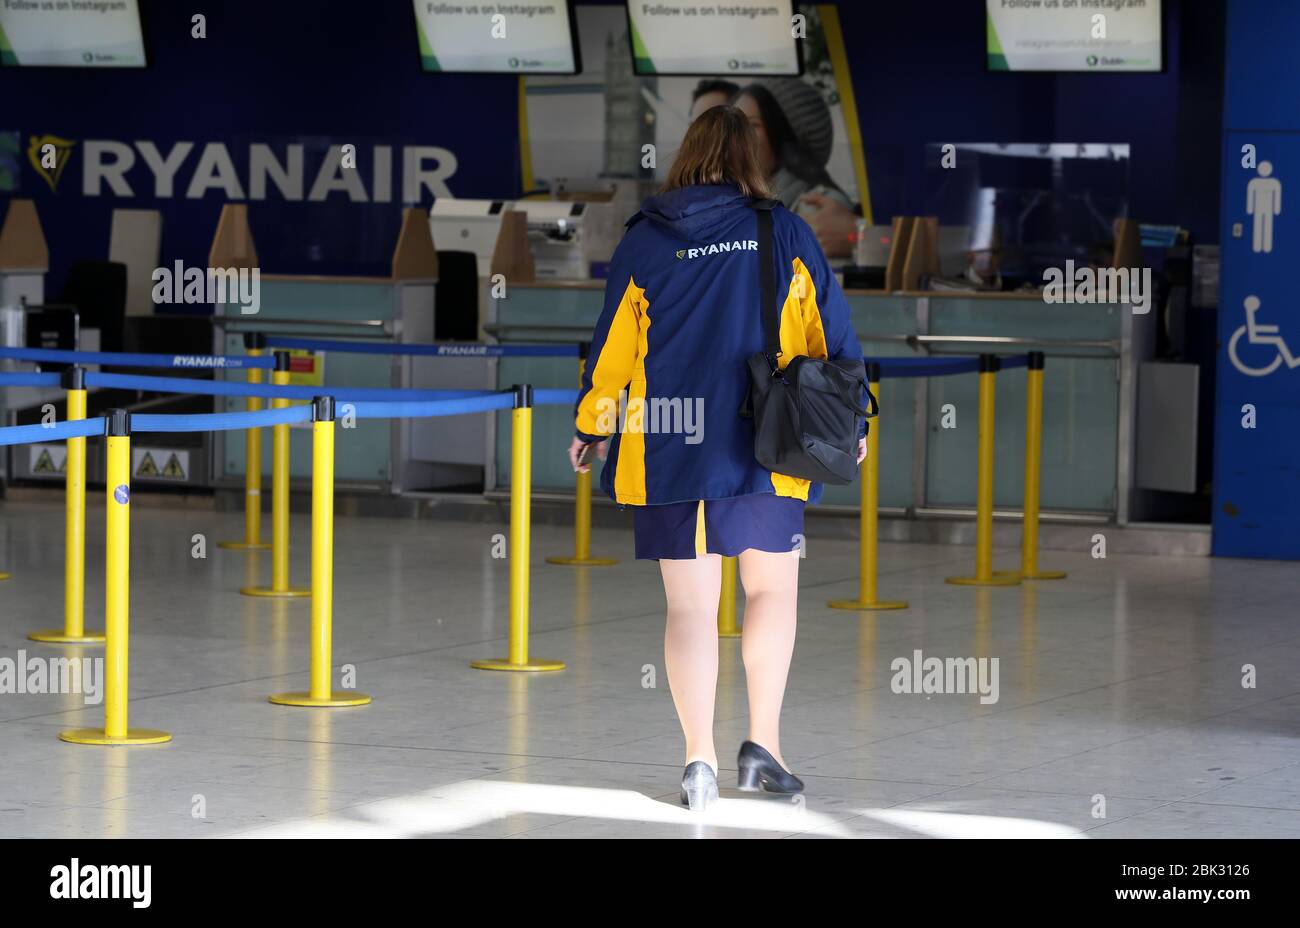 Une femme s'approche d'un comptoir d'enregistrement Ryanair au terminal 1 de l'aéroport de Dublin. Le groupe aérien budgétaire a annoncé que jusqu'à 3 000 emplois dans les pilotes et les équipages de cabine seront réduits dans un programme de restructuration qui pourrait également impliquer des congés non payés, des salaires réduits de 20 %, Et la fermeture de "plusieurs bases d'avions à travers l'Europe" jusqu'à ce que la demande de voyages aériens se rétablit. Date de l'image: Vendredi 1er mai 2020. Voir l'histoire de PA SANTÉ Coronavirus. Crédit photo devrait lire: Brian Lawless/PA Wire Banque D'Images